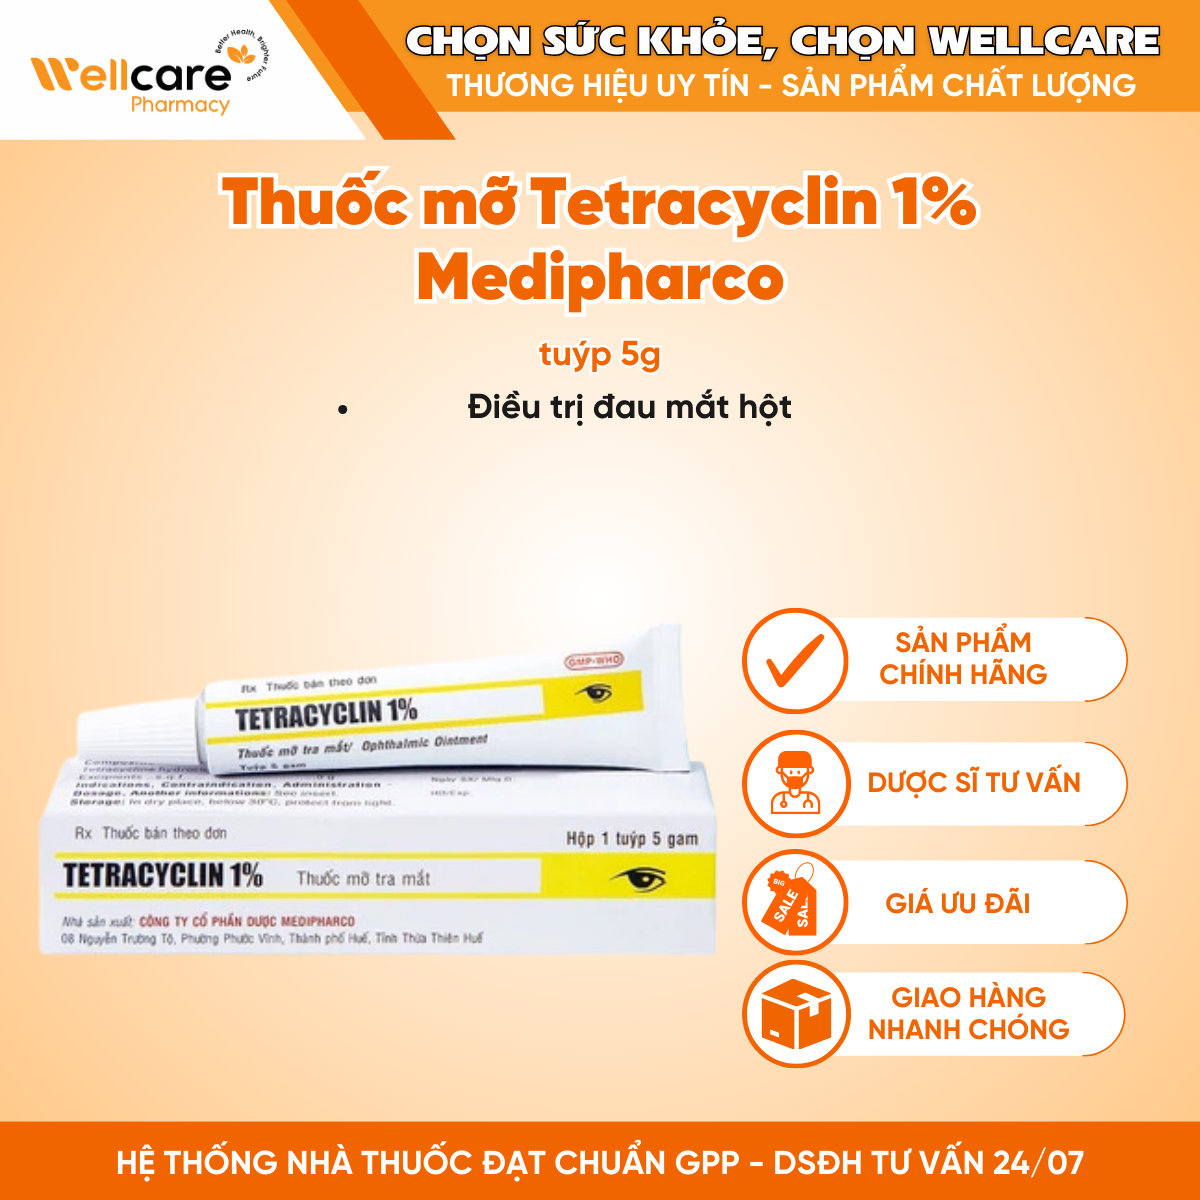 Thuốc mỡ Tetracyclin 1% Medipharco – Điều trị viêm, loét giác mạc (5g)